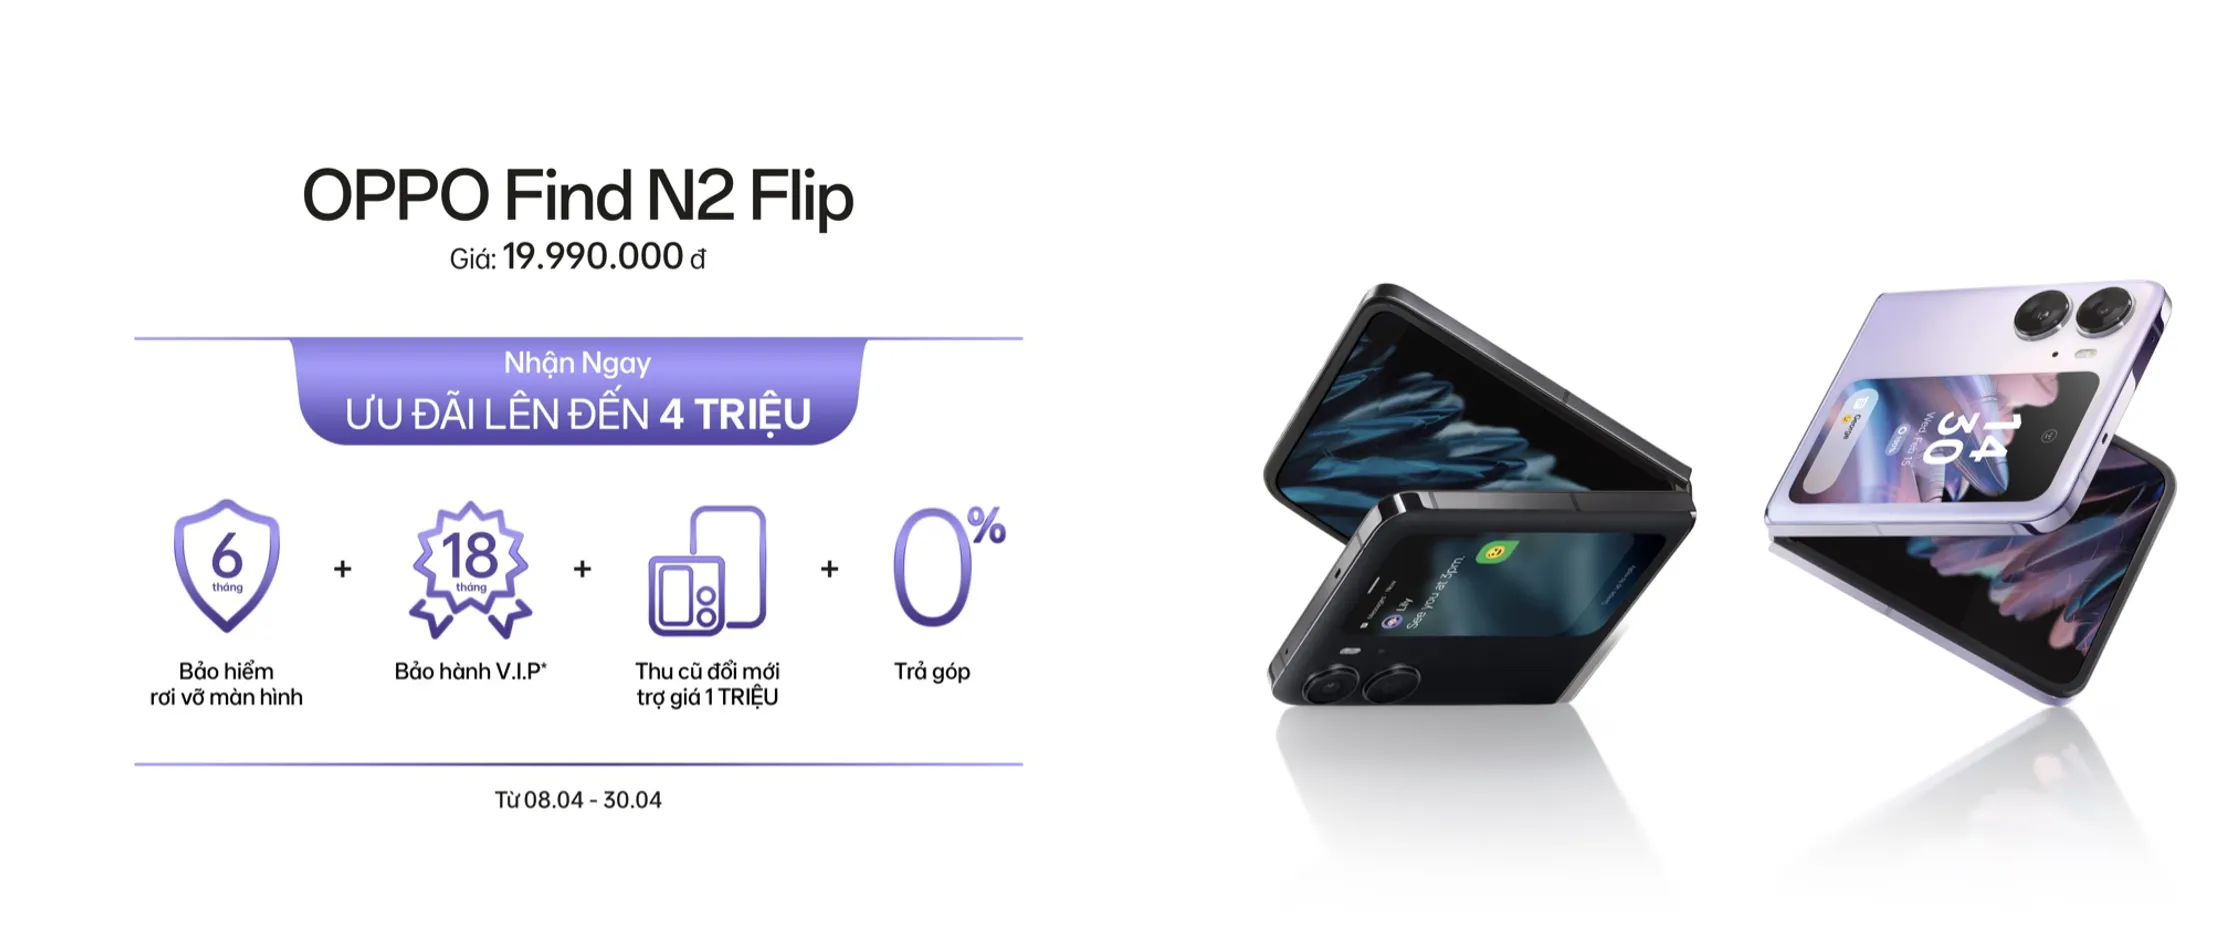 OPPO Find N2 Flip 04 MMOSITE - Thông tin công nghệ, review, thủ thuật PC, gaming